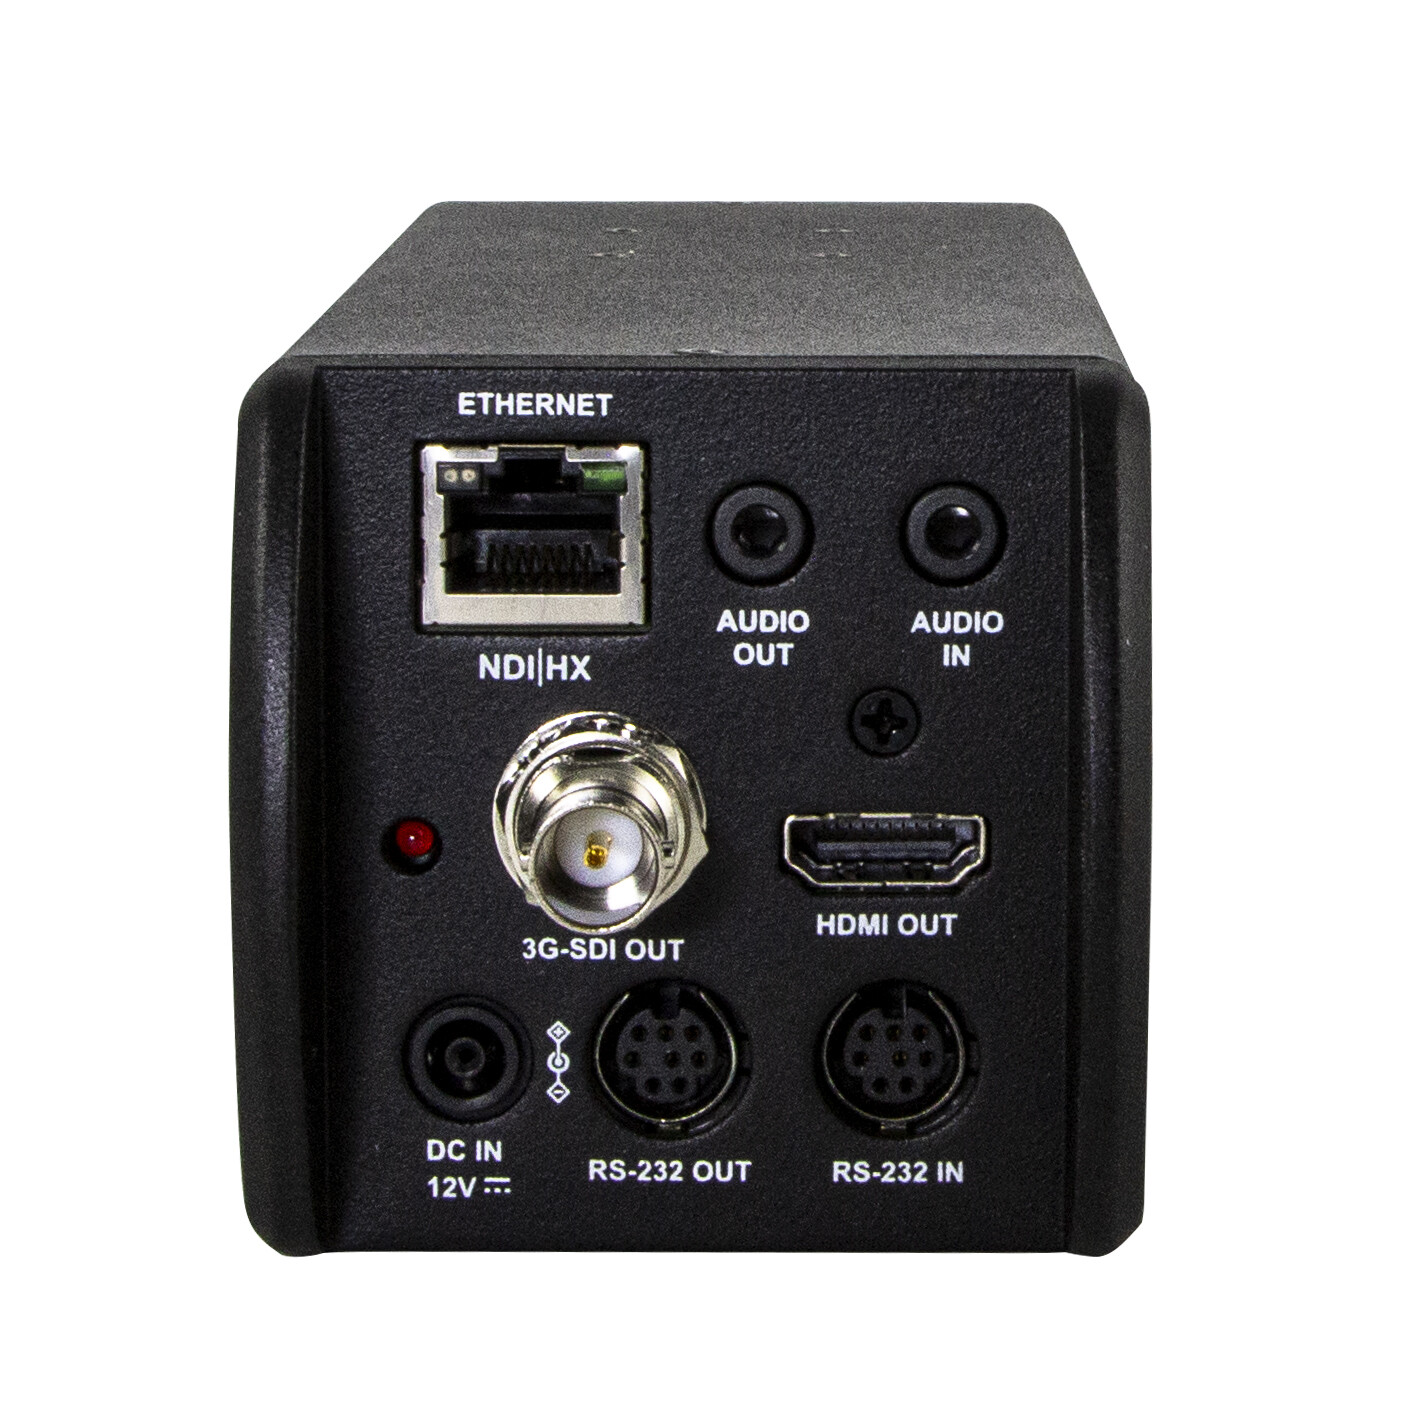 Marshall-Electronics-CV355-30X-NDI-NDI-enabled-Full-HD-Camera